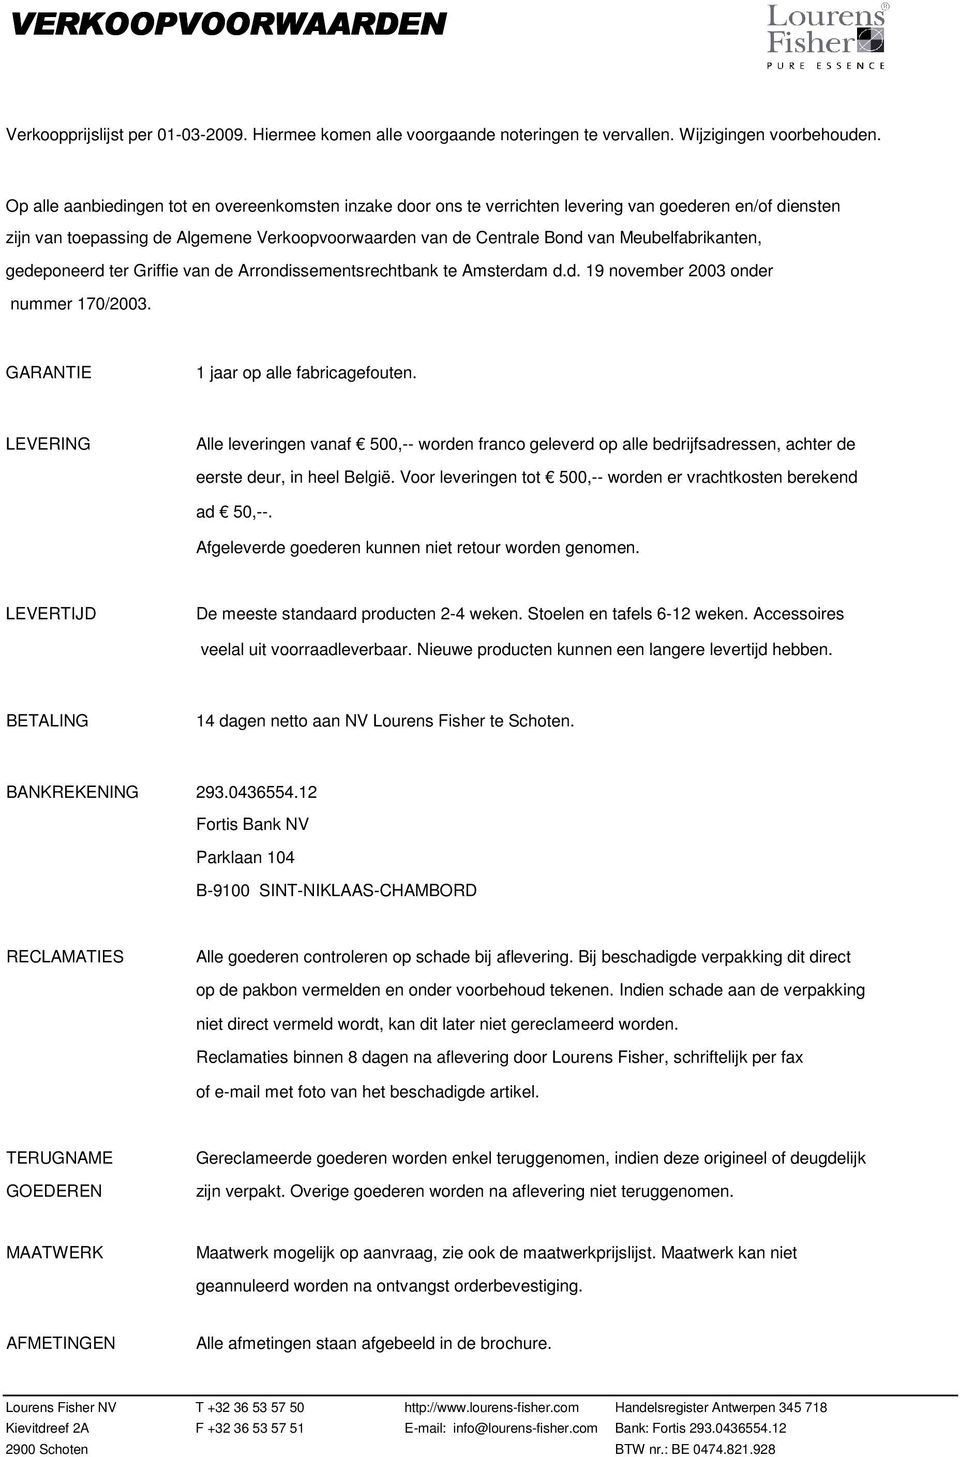 Meubelfabrikanten, gedeponeerd ter Griffie van de Arrondissementsrechtbank te Amsterdam d.d. 19 november 2003 onder nummer 170/2003. GARANTIE 1 jaar op alle fabricagefouten.